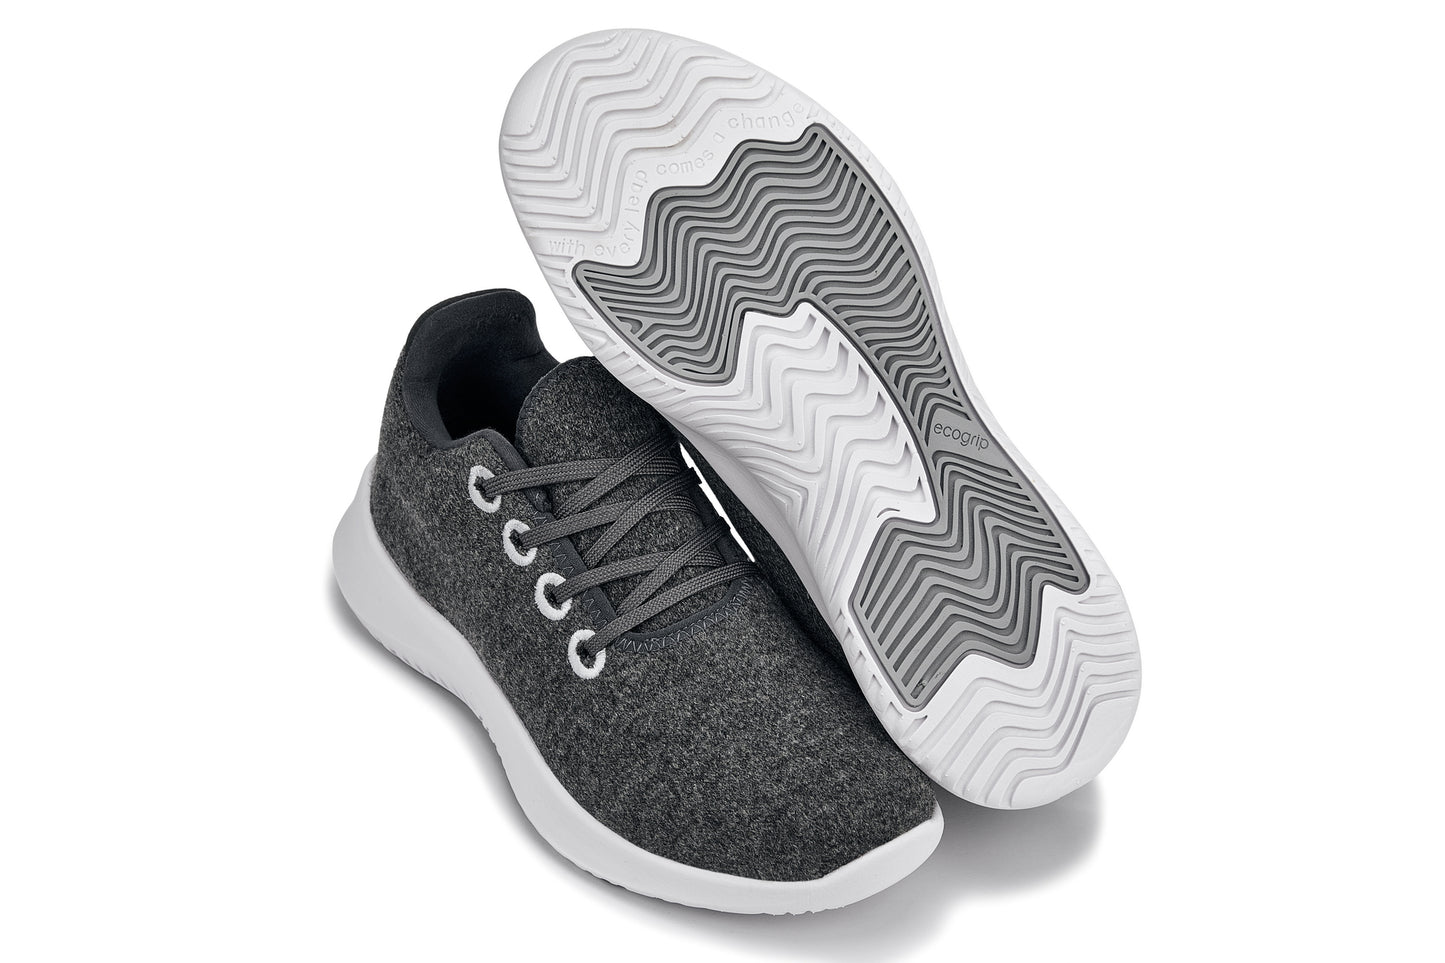 <tc>CALTO - Q503 - حذاء رياضي خفيف الوزن للغاية بطول 2.4 بوصة (رمادي فحمي/أبيض)</tc>